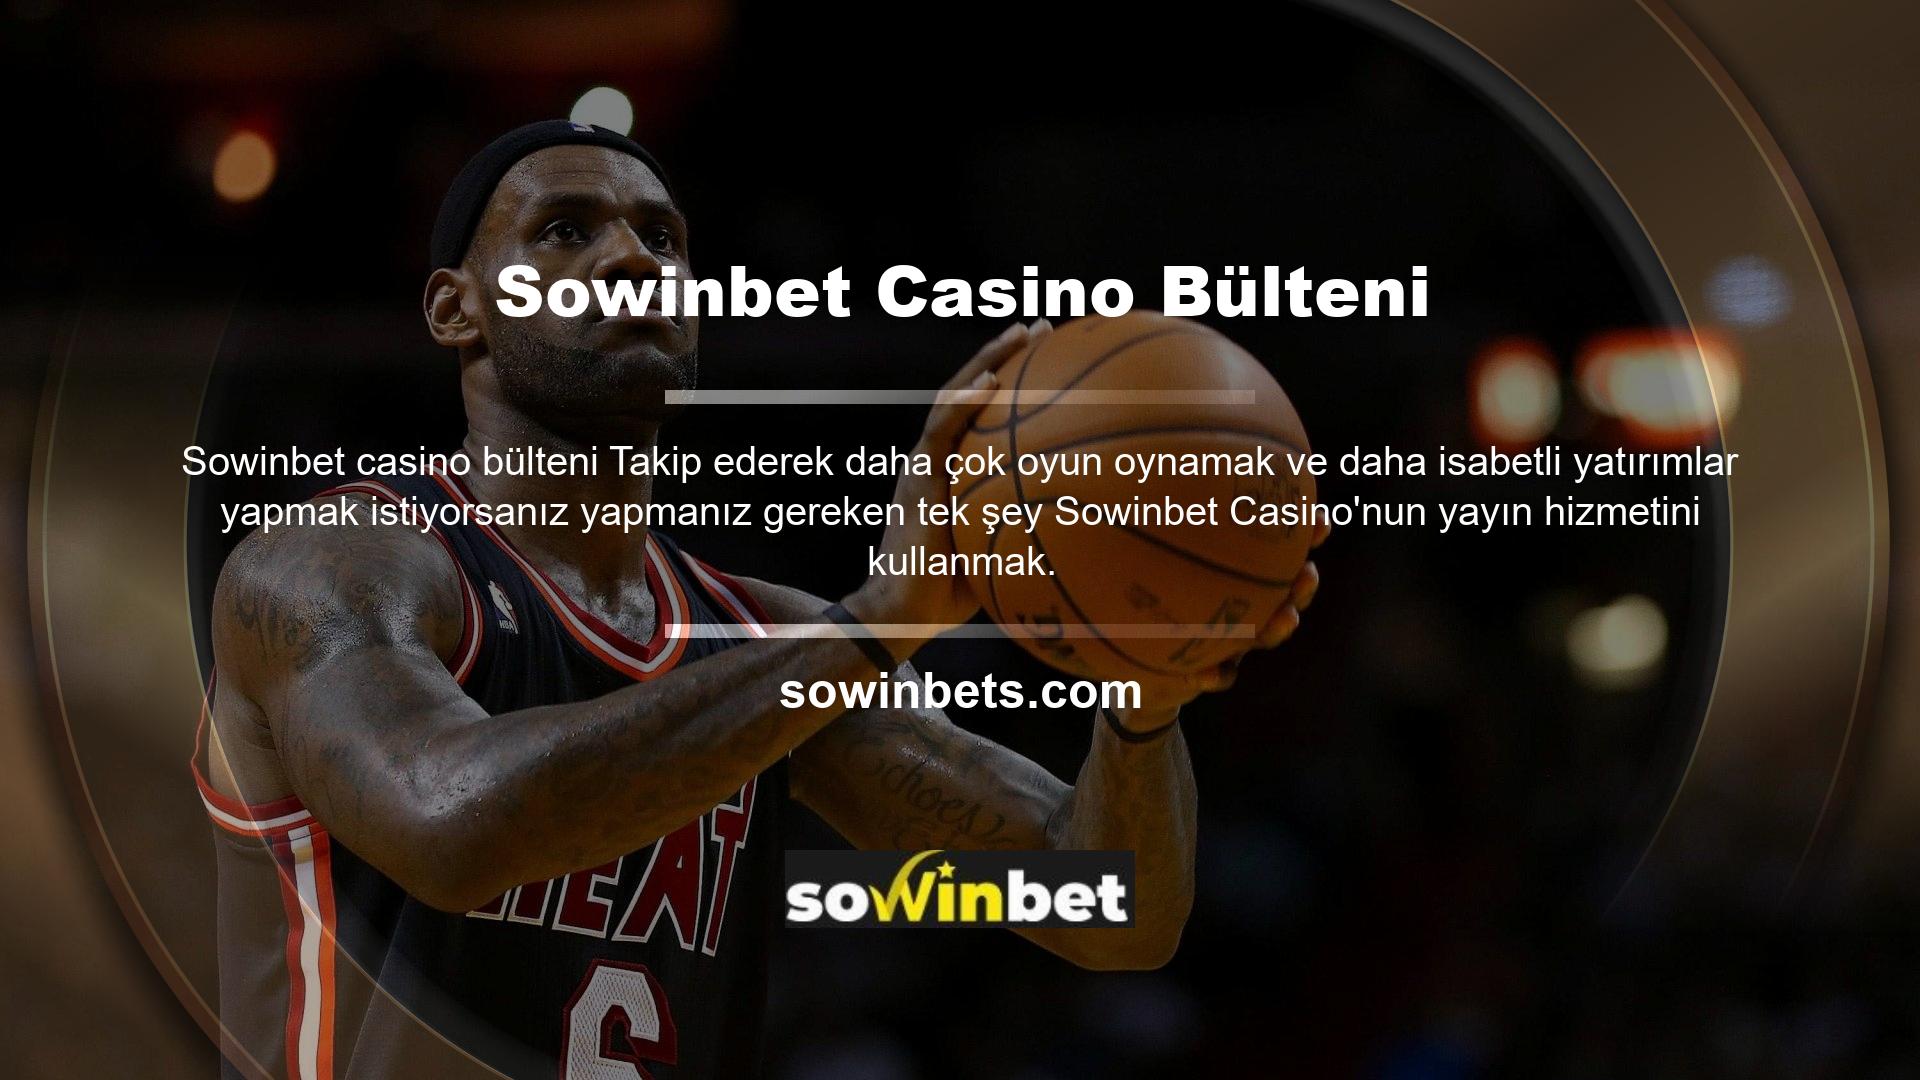 Canlı casino şirketi olarak çeşitli bahis oyunlarını web sitesi adresinde ücretsiz olarak yayınlamaya devam etmektedir